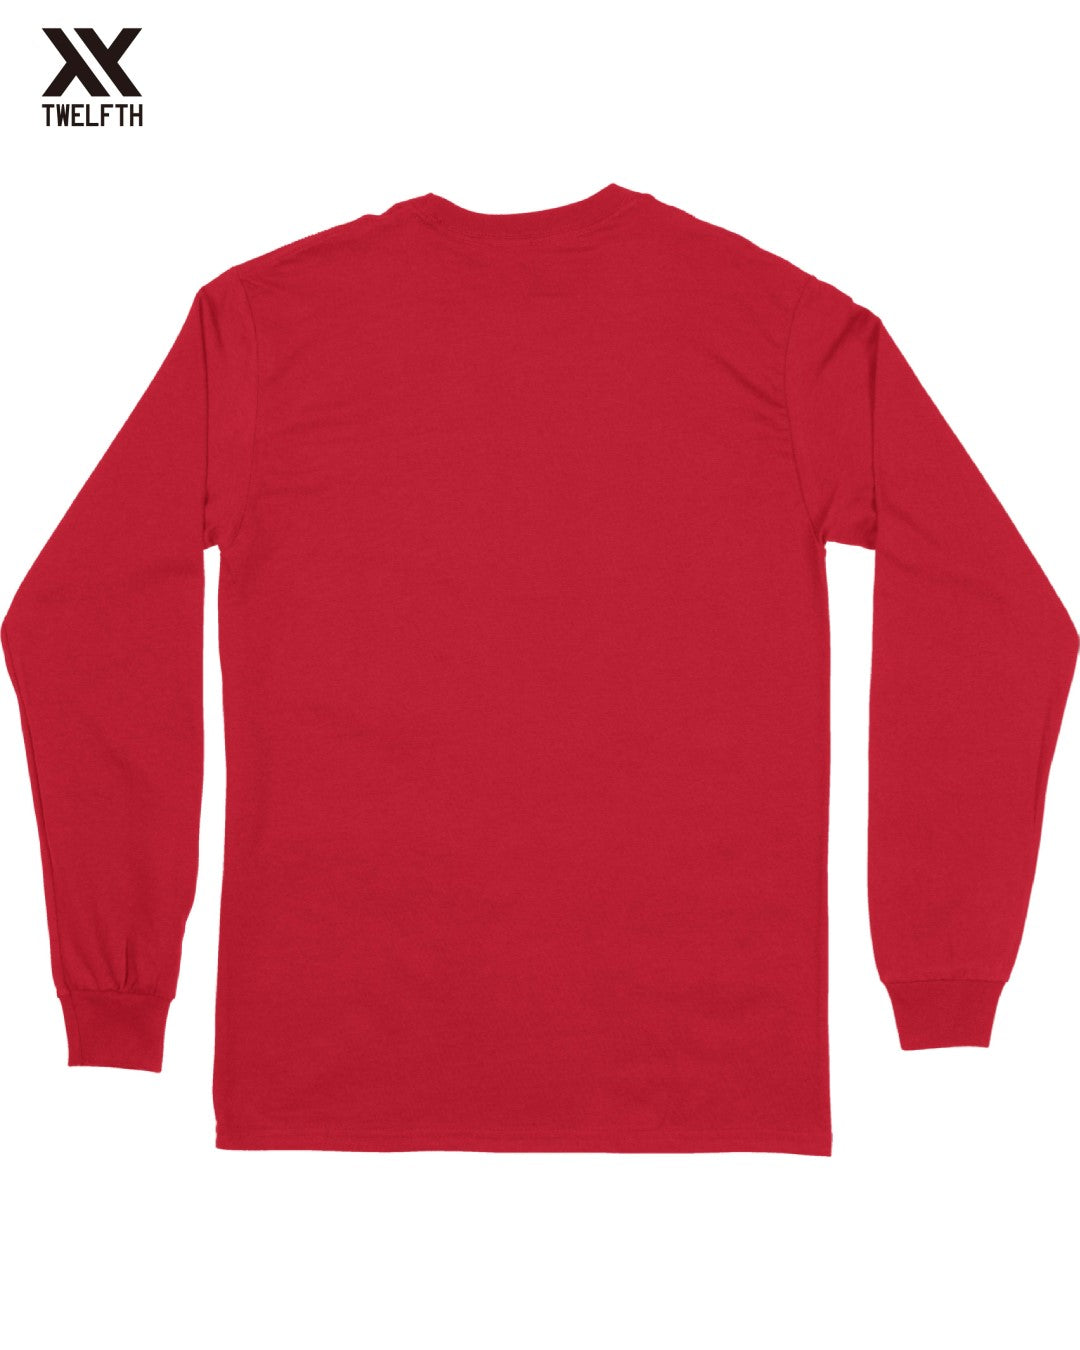 Ajax Crest T-Shirt - Mens - Long Sleeve